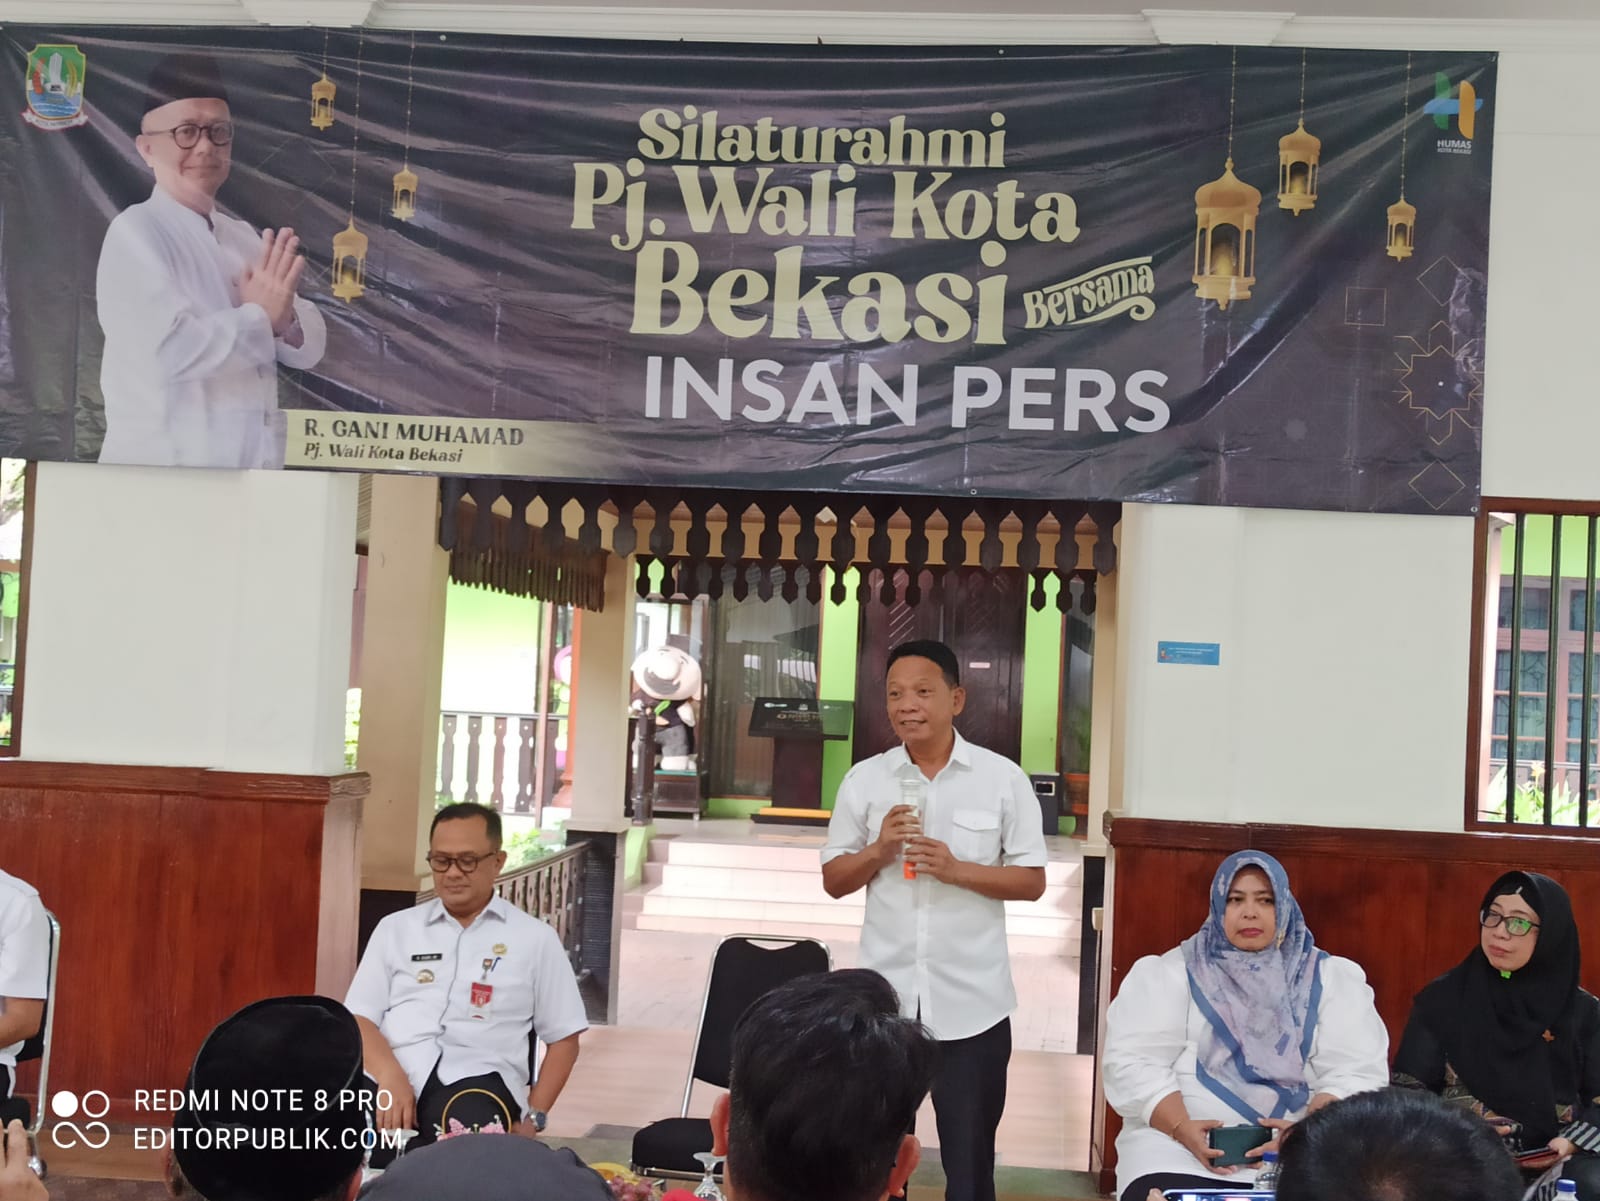 Pj Wali Kota Bekasi Silaturahmi Dengan Insan Pers